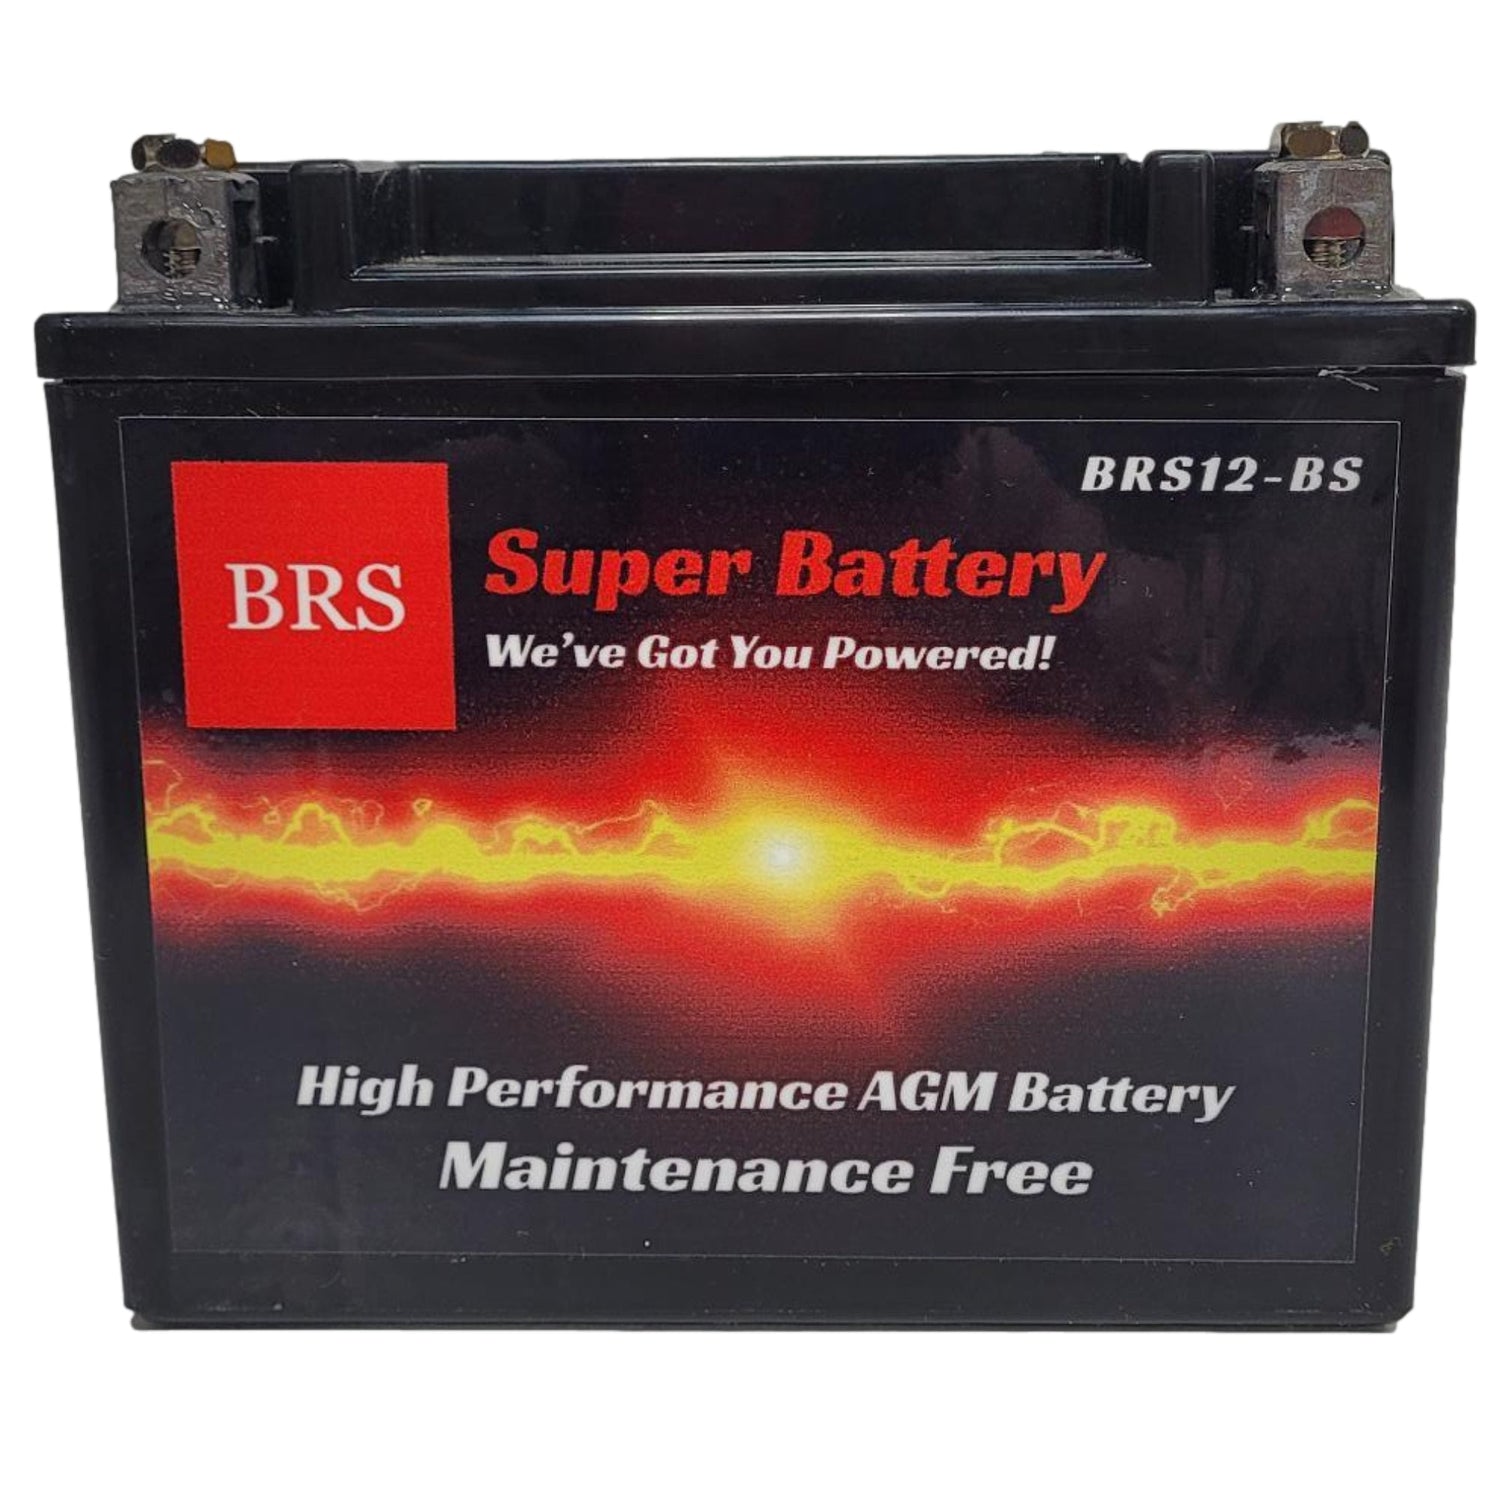 BRS12-BS 12v 12AH 155CCA 30 Day Warranty - BRS Super Battery